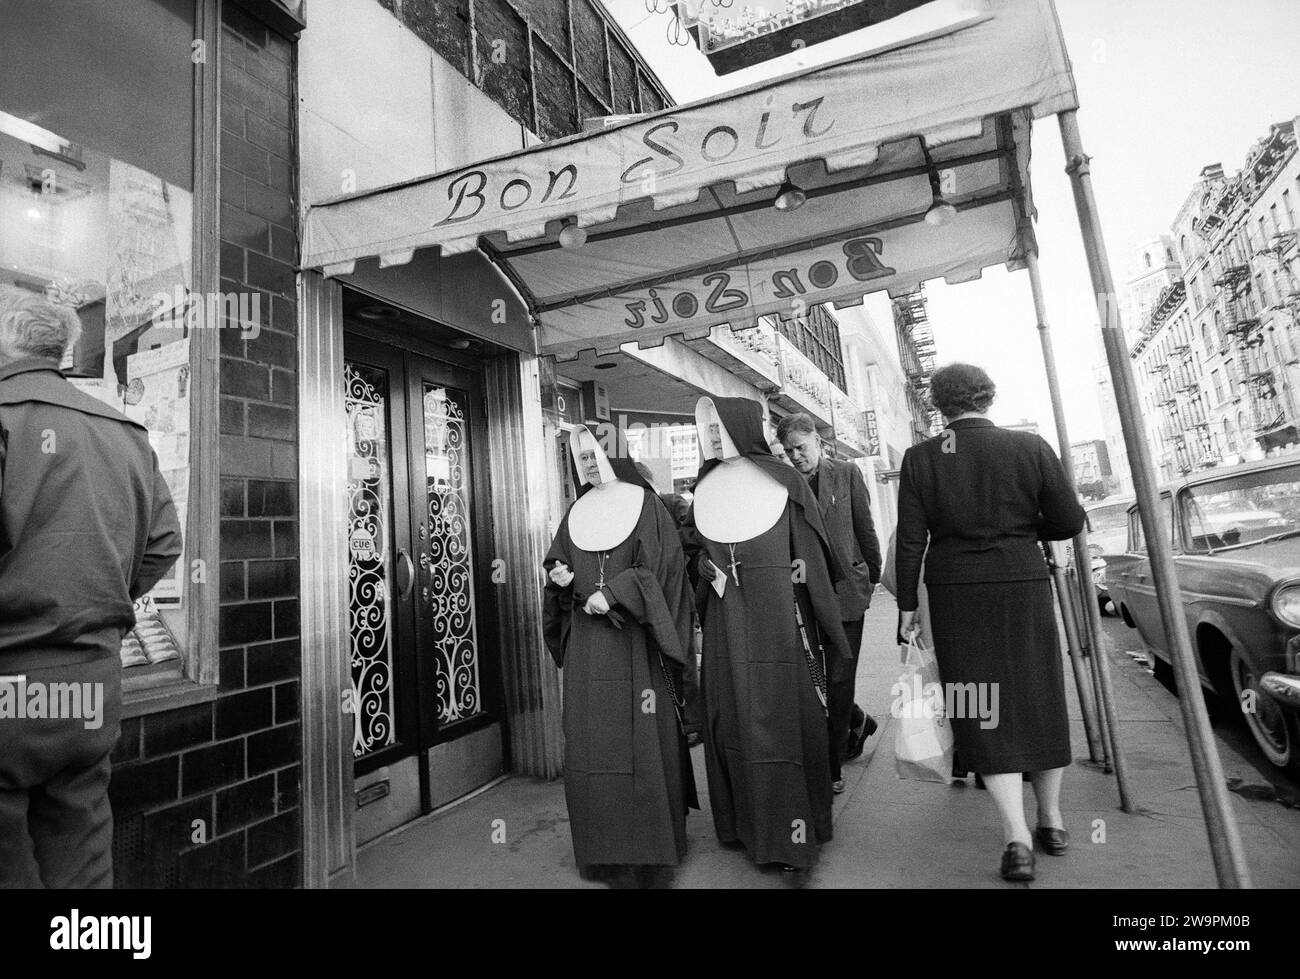 Dos monjas caminando bajo el dosel de entrada al club nocturno Bon Soir, Nueva York, Nueva York, EE.UU., Angelo Rizzuto, colección Anthony Angel, septiembre de 1960 Foto de stock